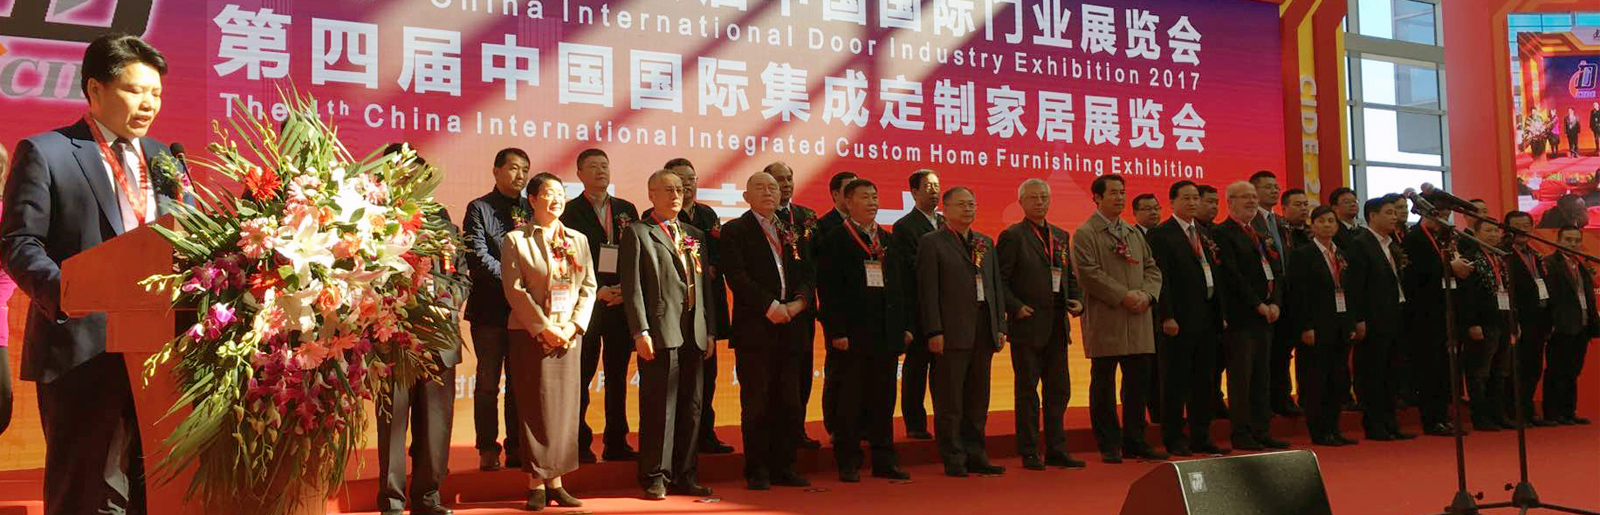 第五届中国国际集成定制家居展览会(北京定制家居展)